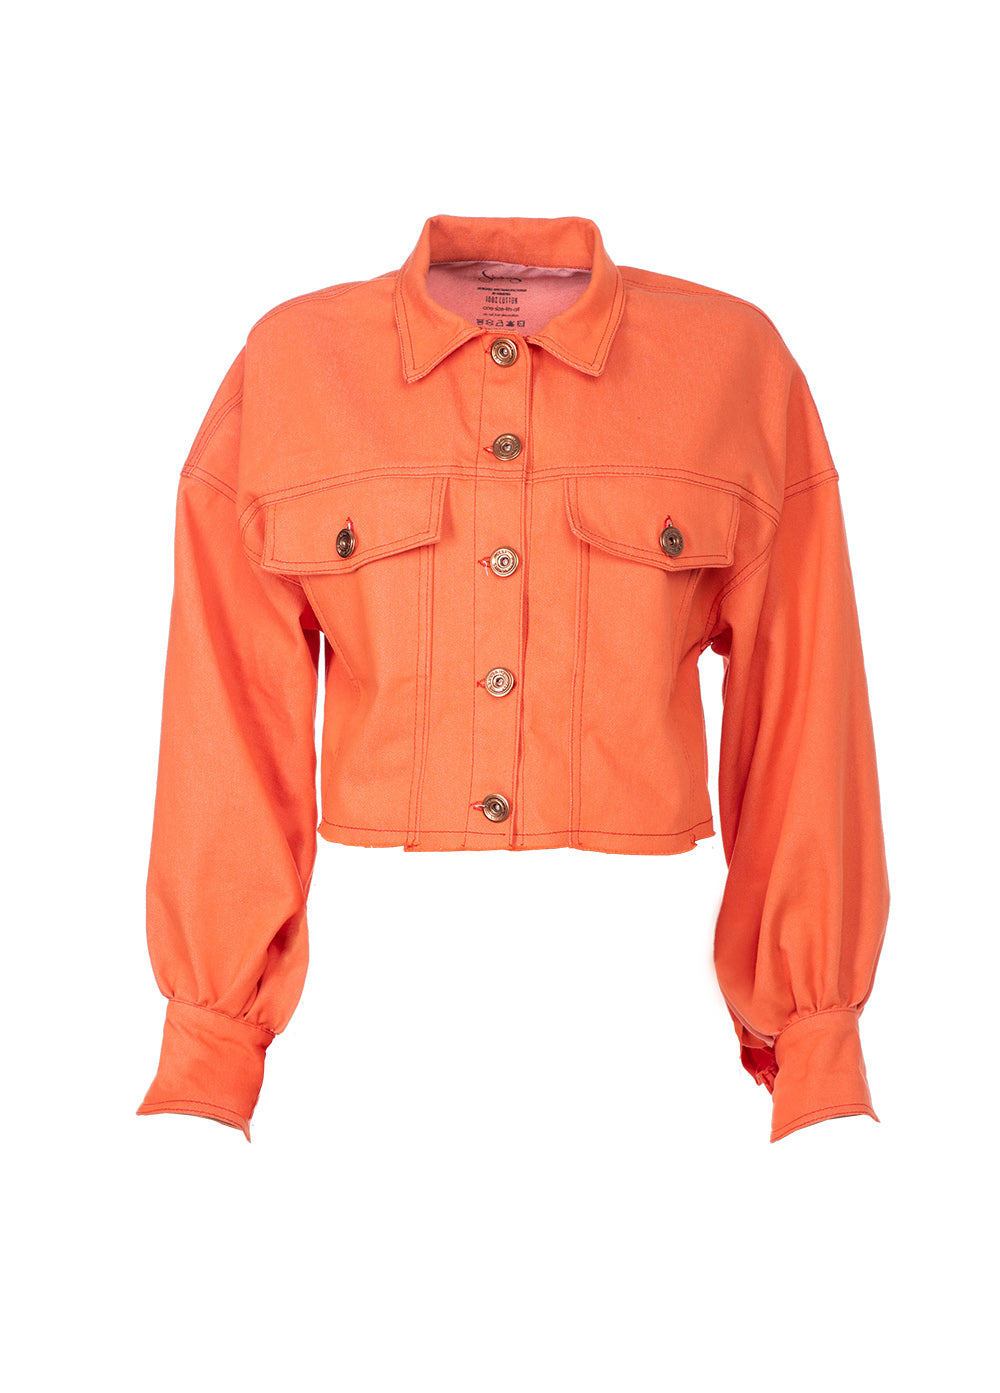 Shabeeg Orange Denim Jacket